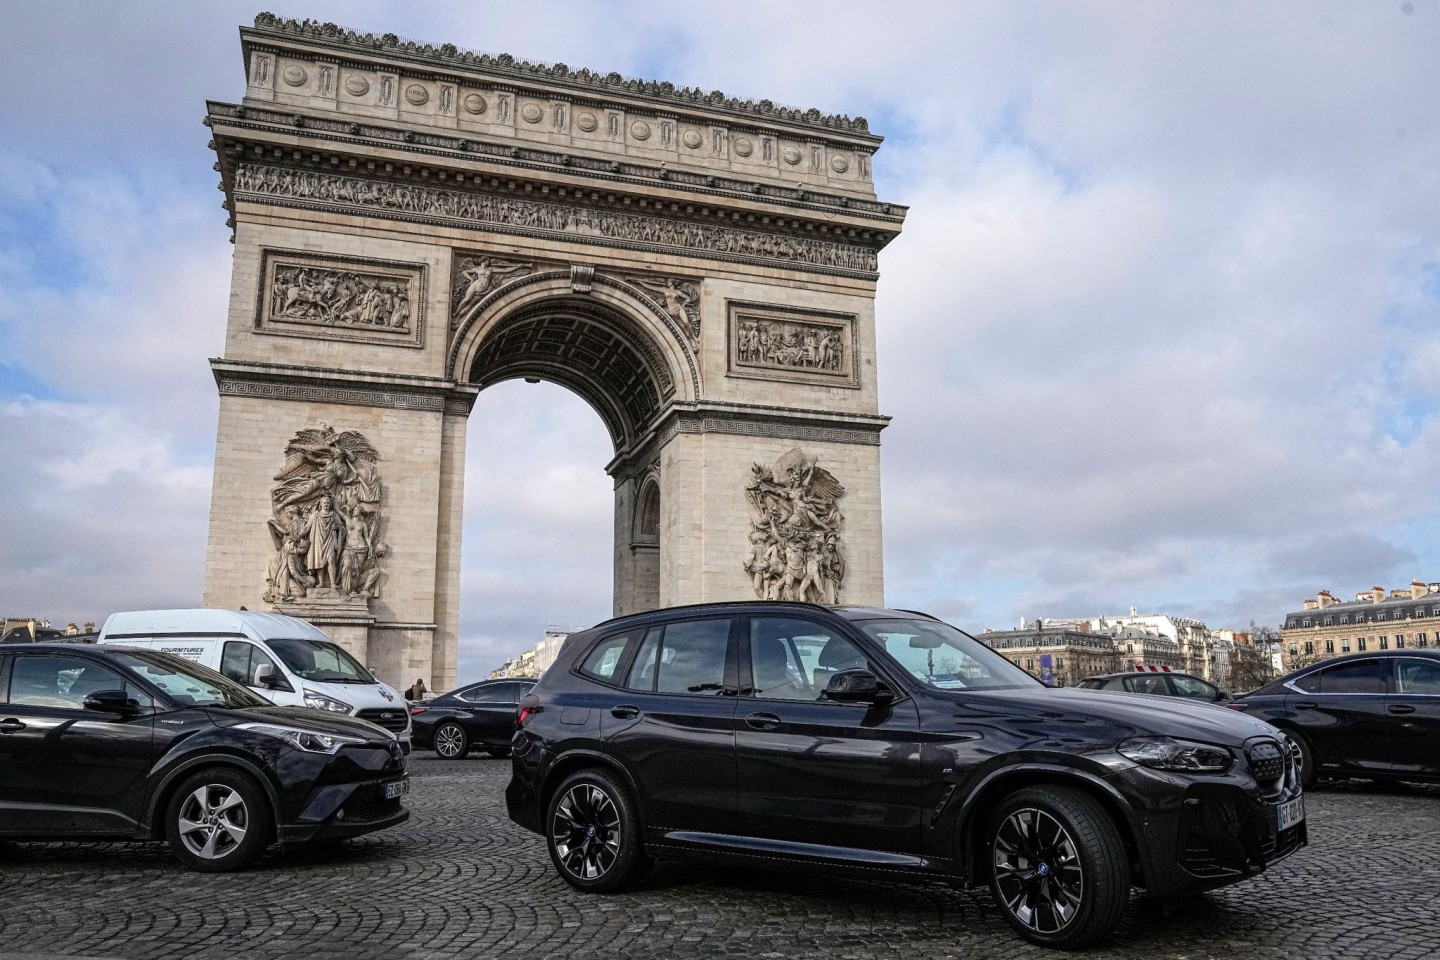 Seit Jahren kämpft die Pariser Stadtverwaltung für eine Verkehrswende und weniger Autoverkehr - nun sind SUV von einer drastischen Entscheidung betroffen.